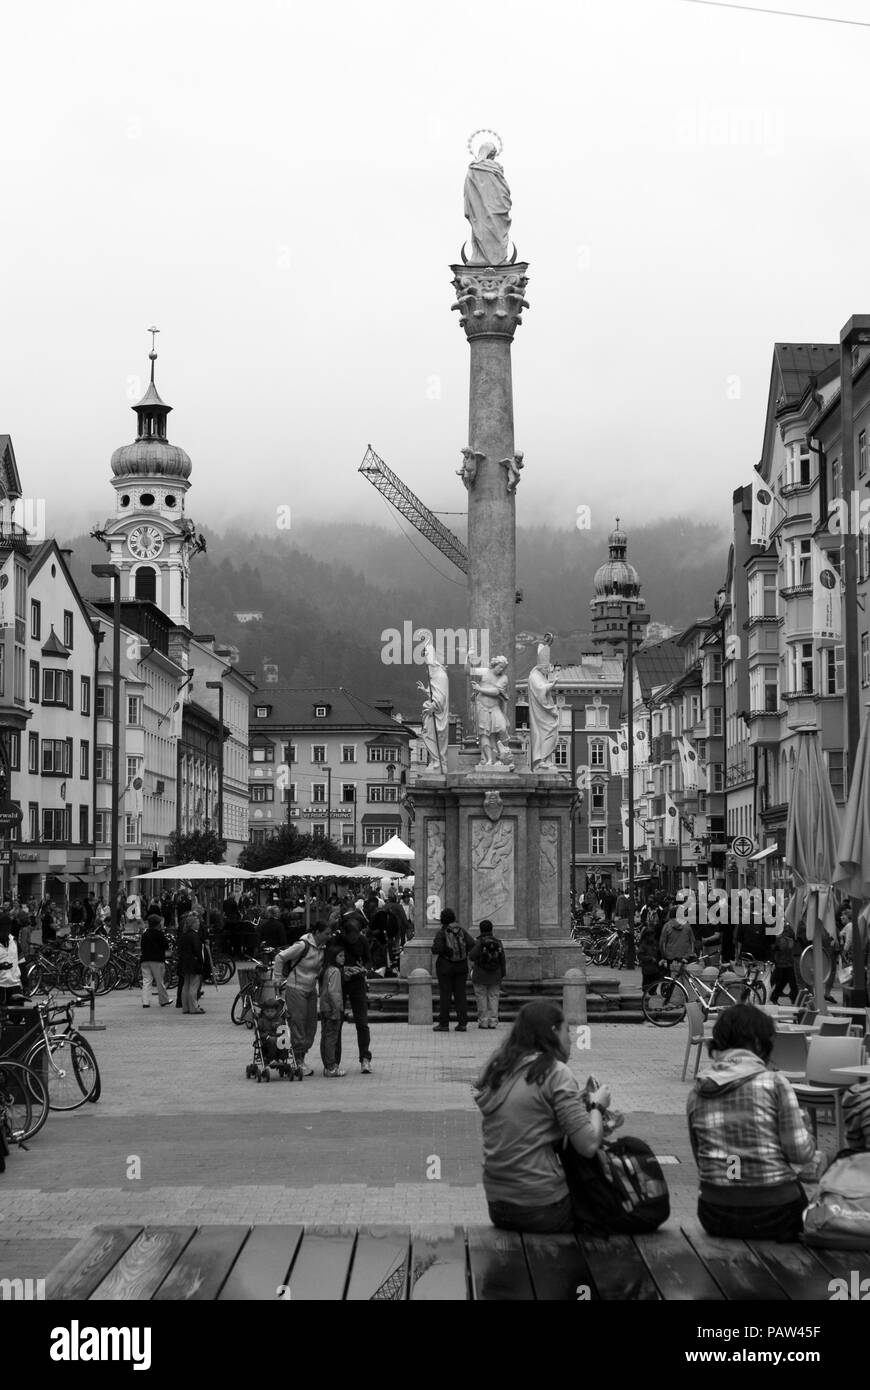 Maria-Theresien-Straße (oder den Altstädter Ring) und der annasäule Denkmal - der Platz ist ein beliebtes Ziel für Touristen in Innsbruck, Österreich Stockfoto